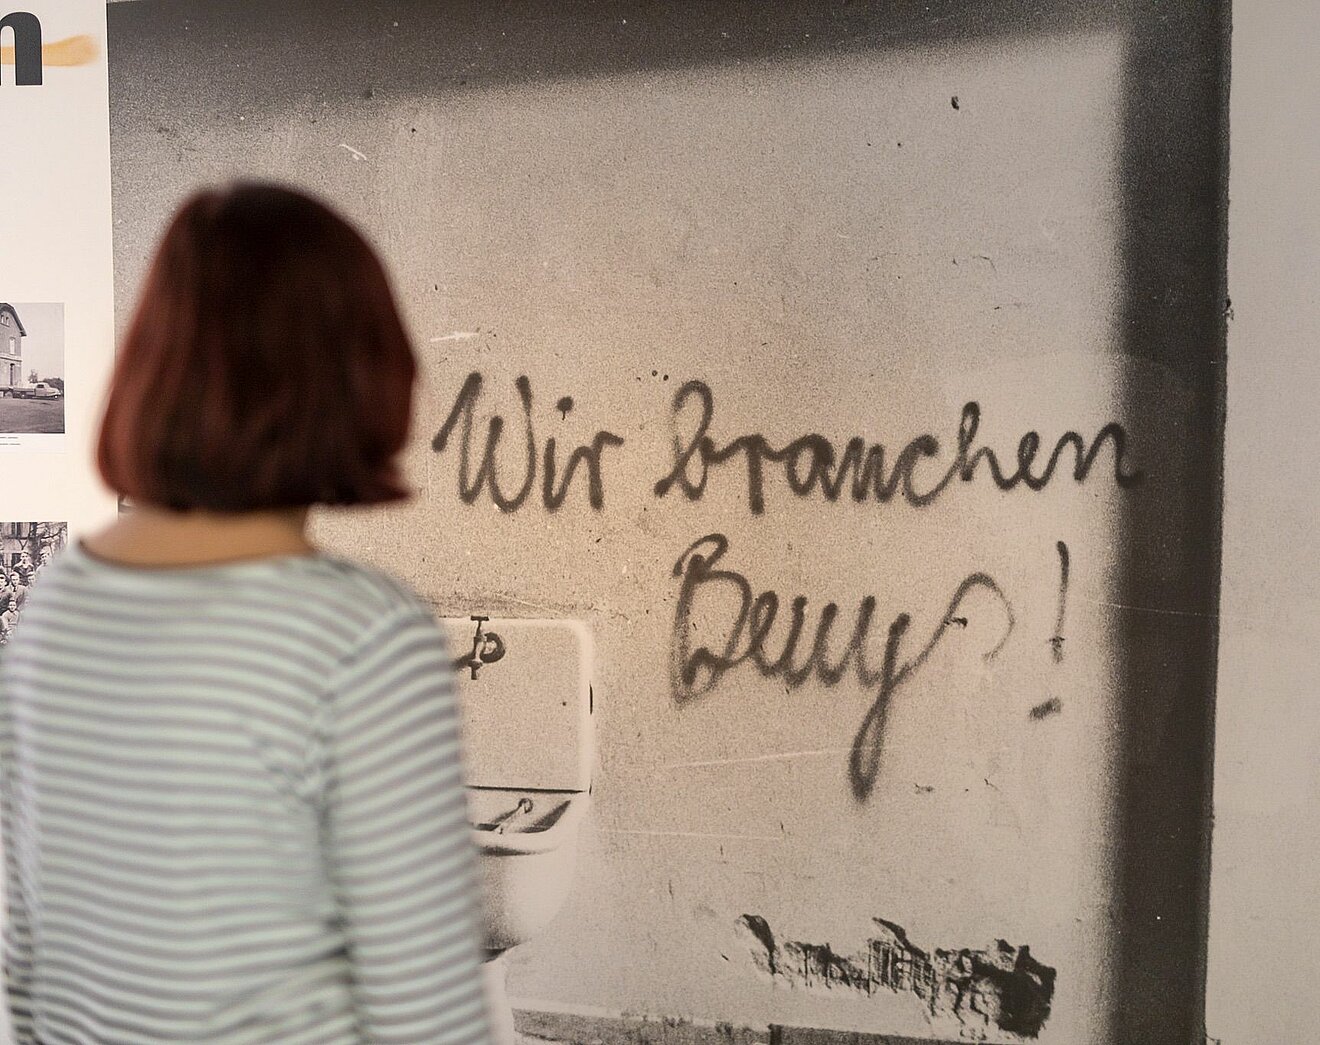 Besucherin vor dem Foto eines Graffitis mit dem Satz "Wir brauchen Beuys"